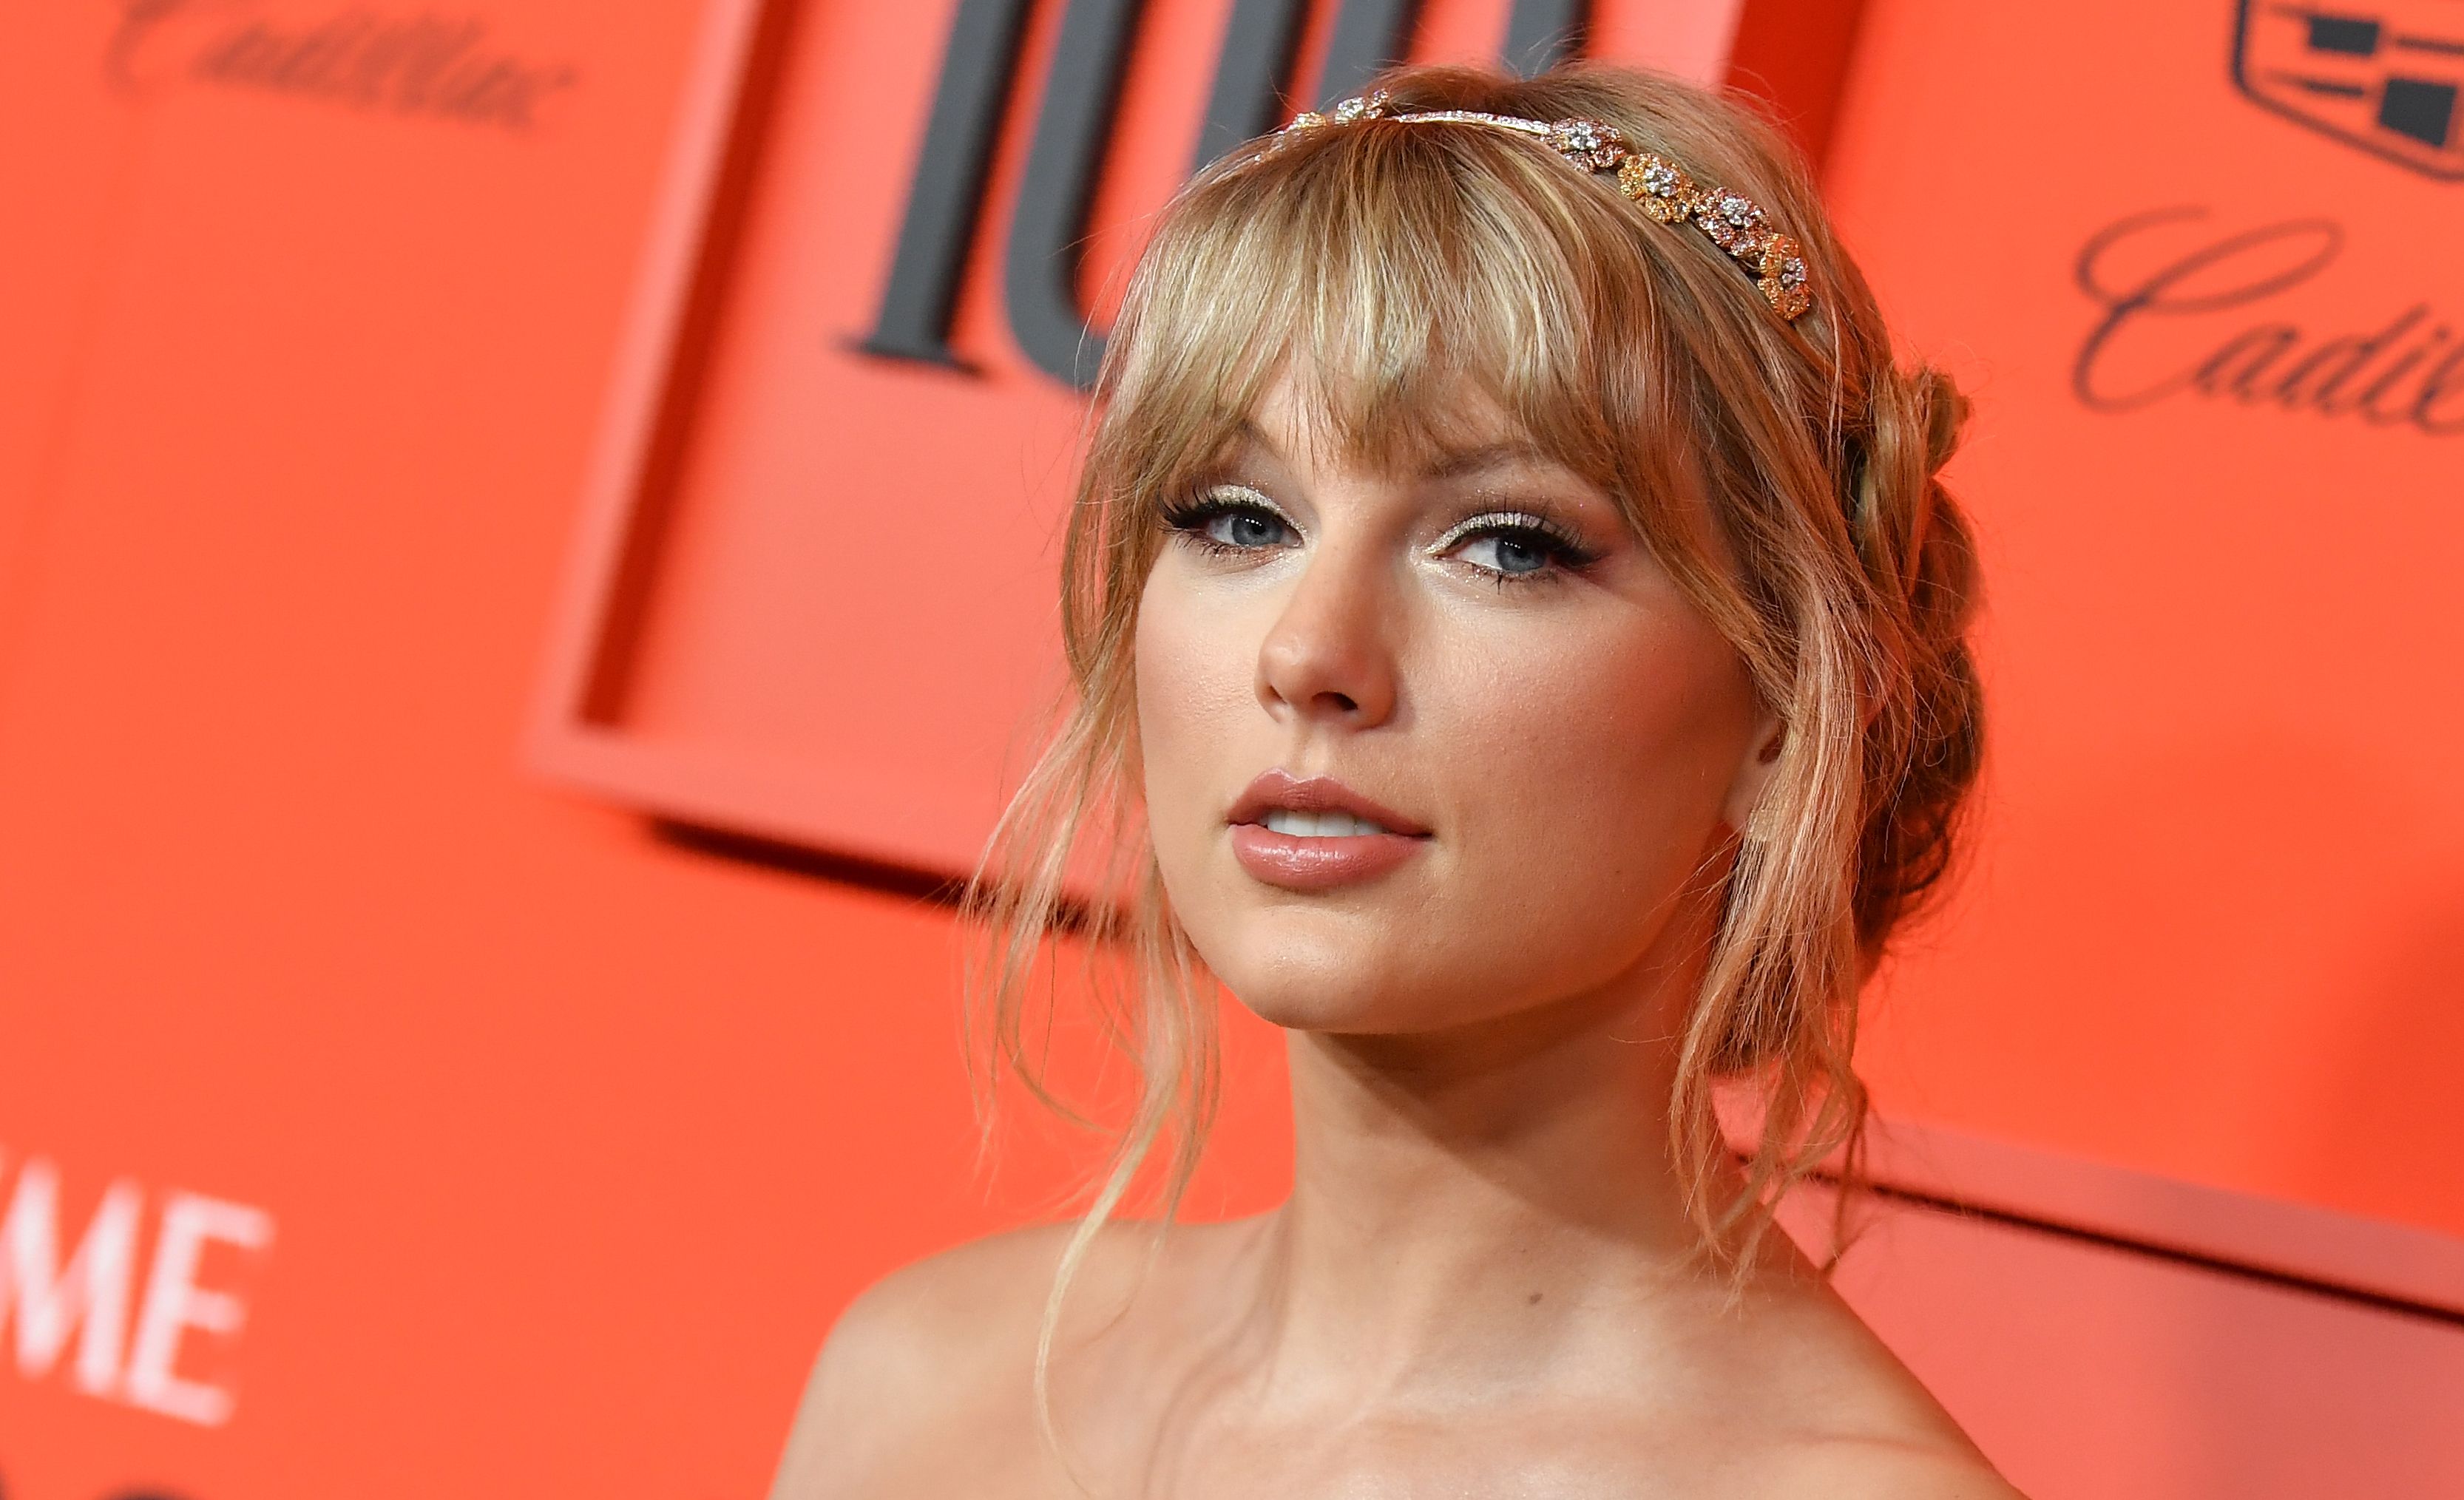 La estrella del pop Taylor Swift promociona su nuevo single, "ME!". (Foto Prensa Libre: AFP)